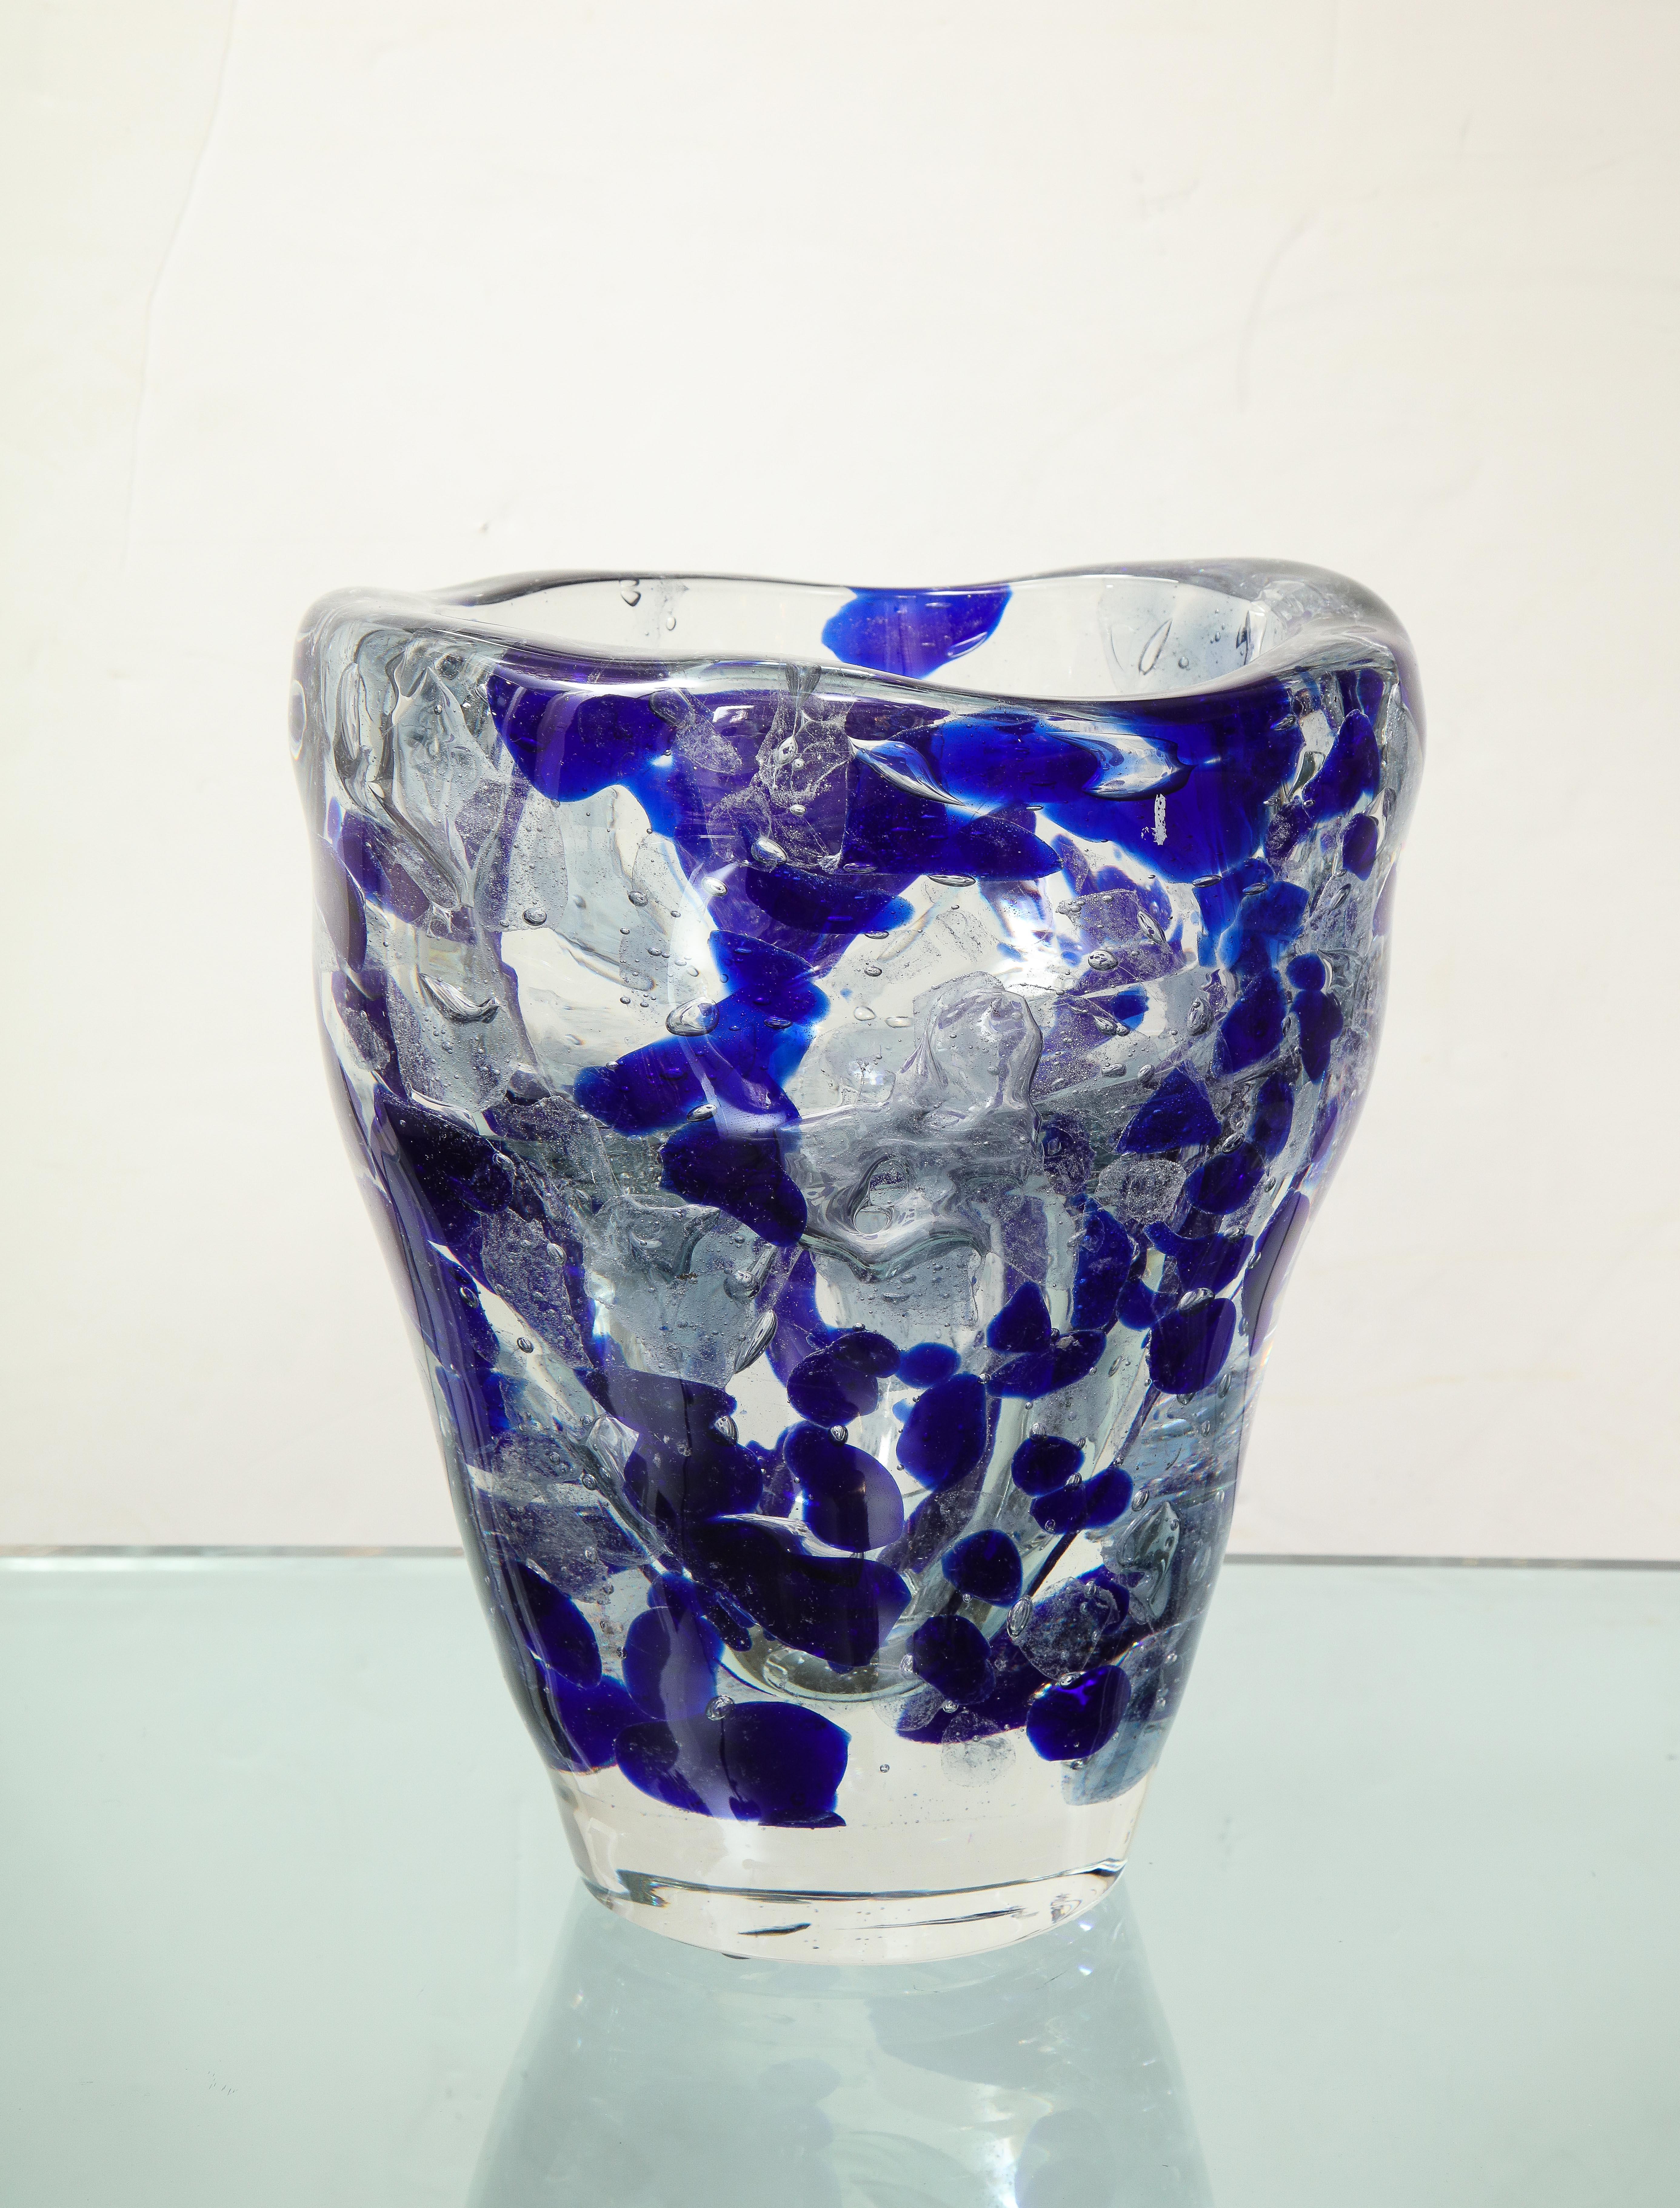 Ce vase en verre de Murano est disponible à l'achat immédiat. Des commandes personnalisées sont disponibles dans différentes couleurs.